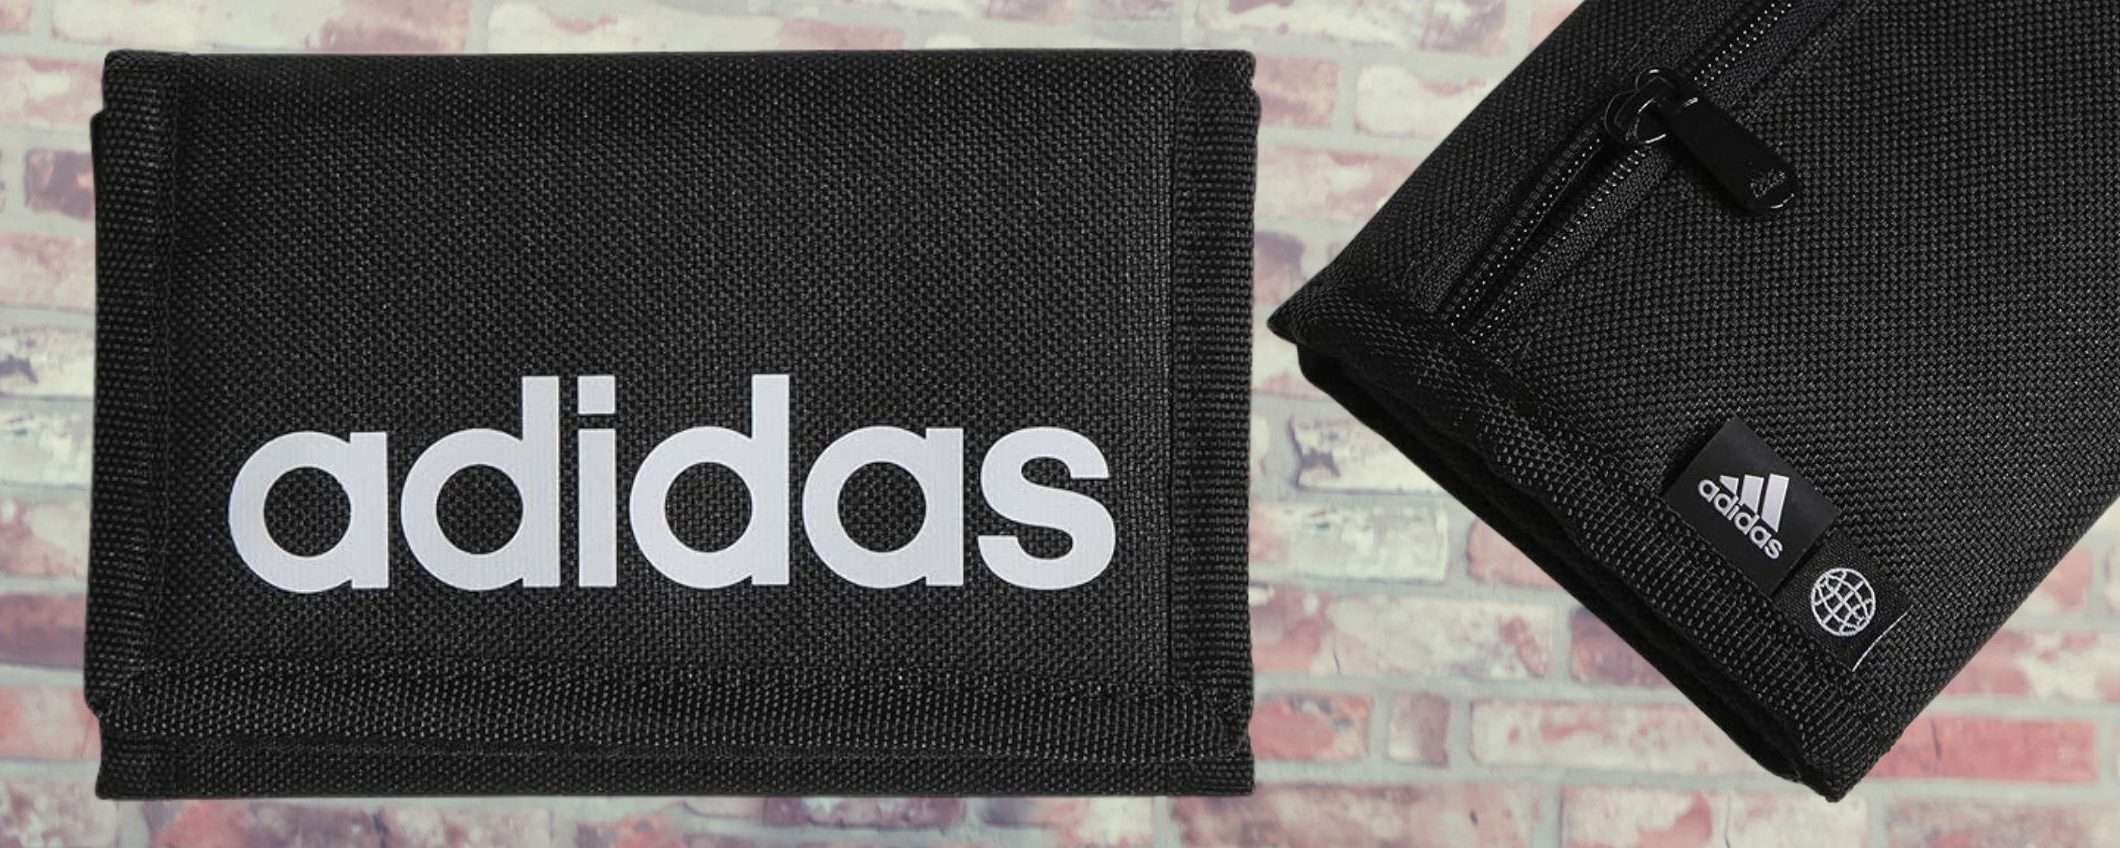 Portafogli Adidas a 10€: la BOMBA torna disponibile su Amazon